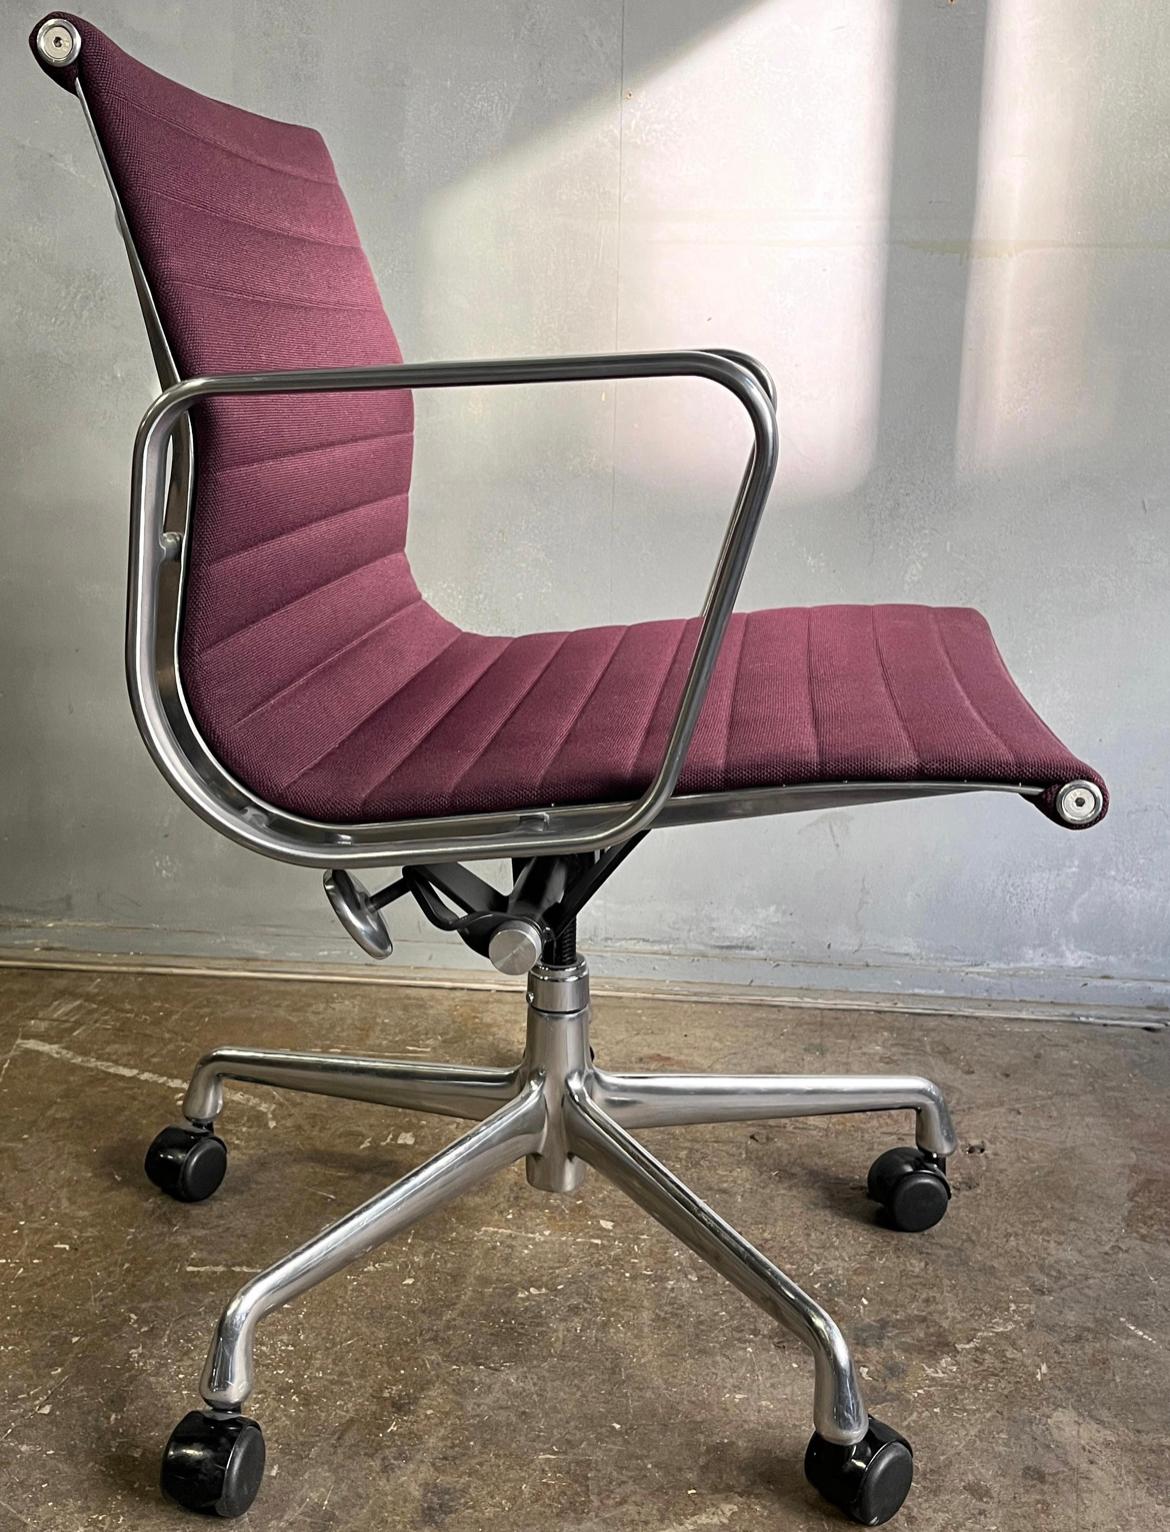 Pour votre considération, ces chaises Eames Aluminum Group sont recouvertes d'un magnifique tissu violet. L'Elegance et le confort séparent cette chaise emblématique des autres. La tapisserie est en très bon état, les accoudoirs présentant quelques